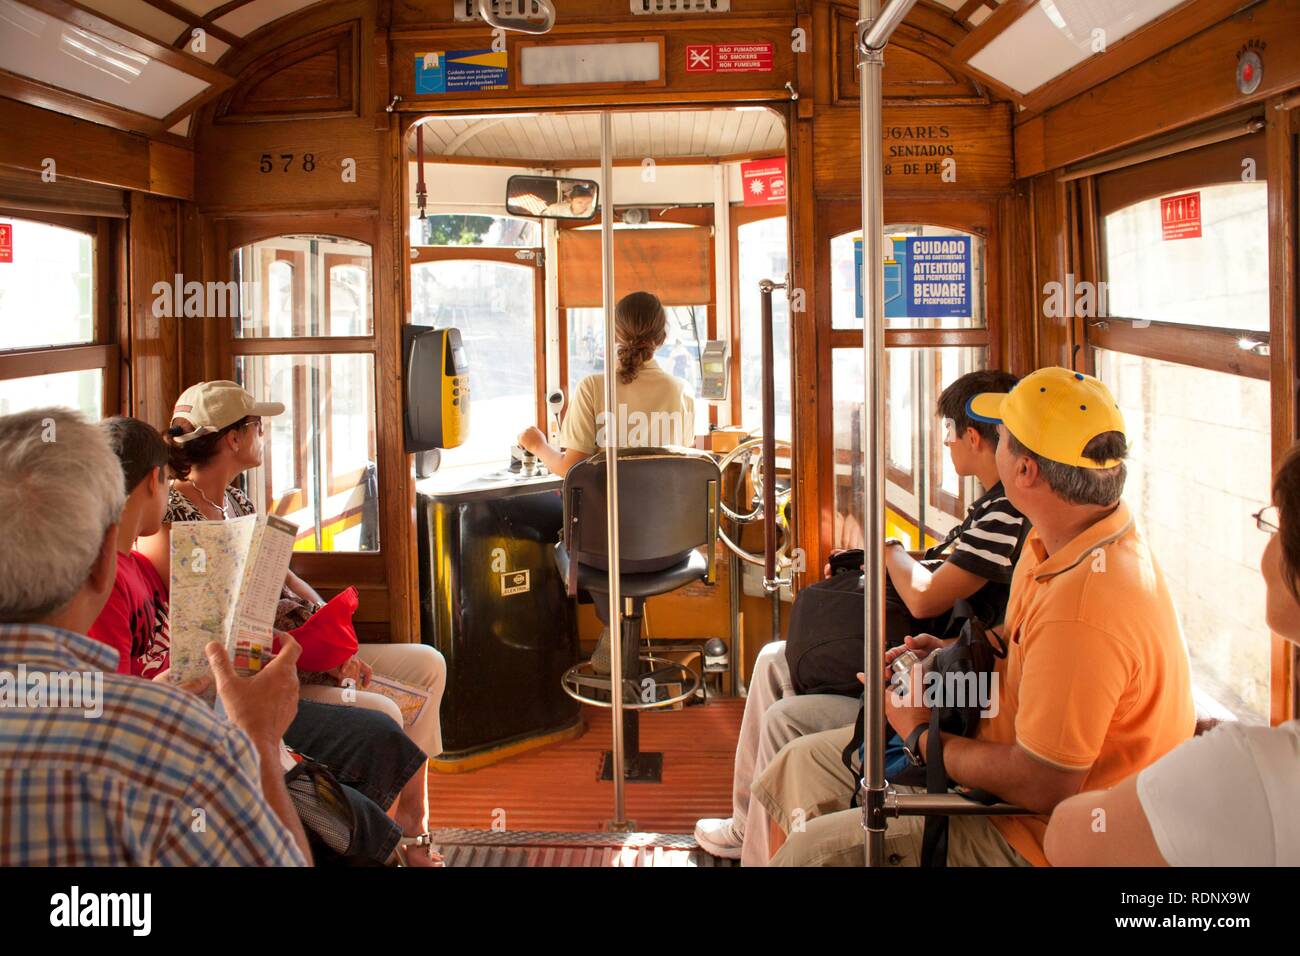 Adesivo per porta - interno di un vecchio tram di Lisbona